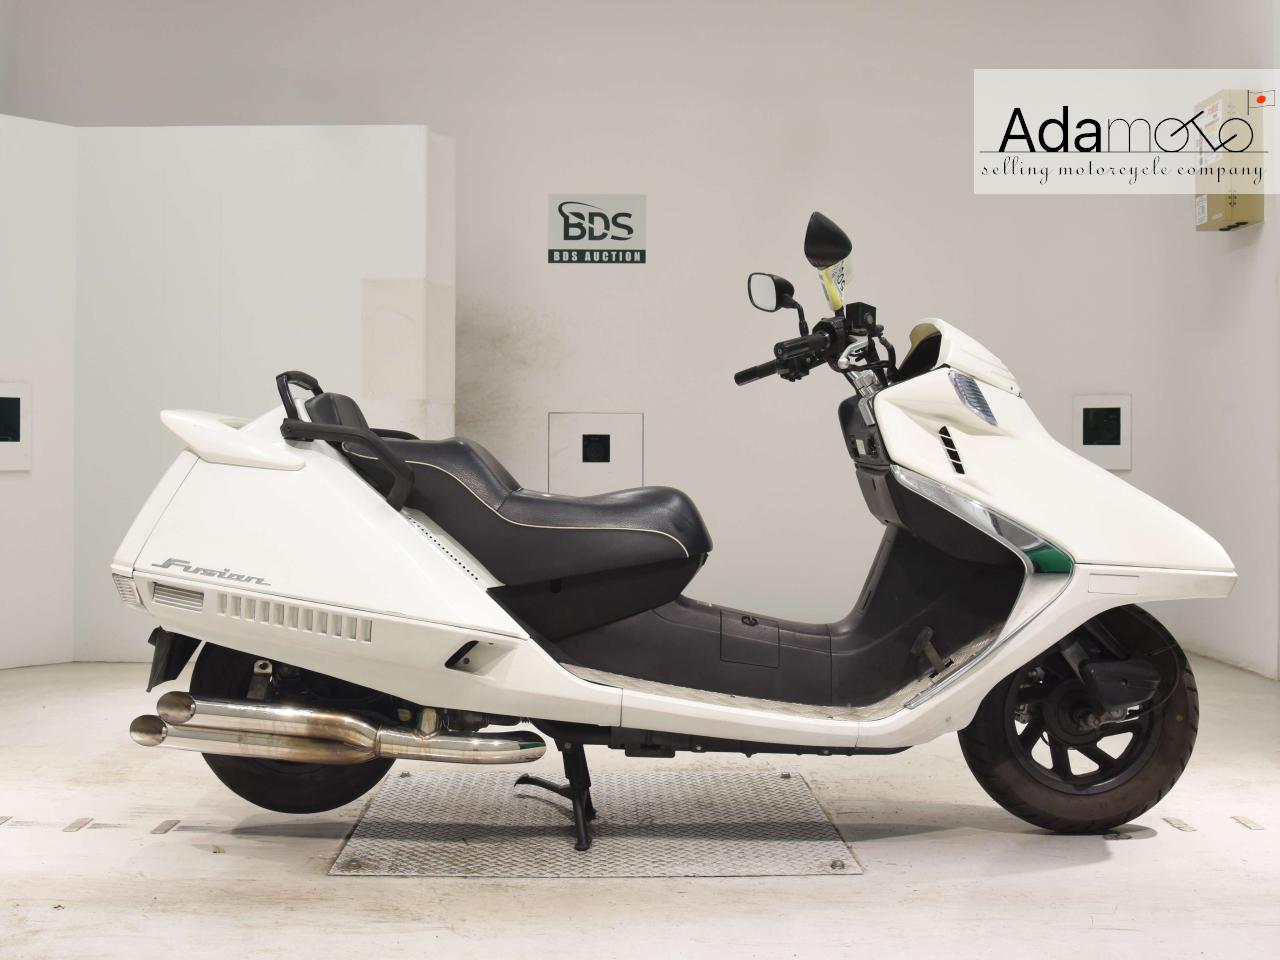 Honda FUSION XSE - Adamoto - Motorcycles from Japan